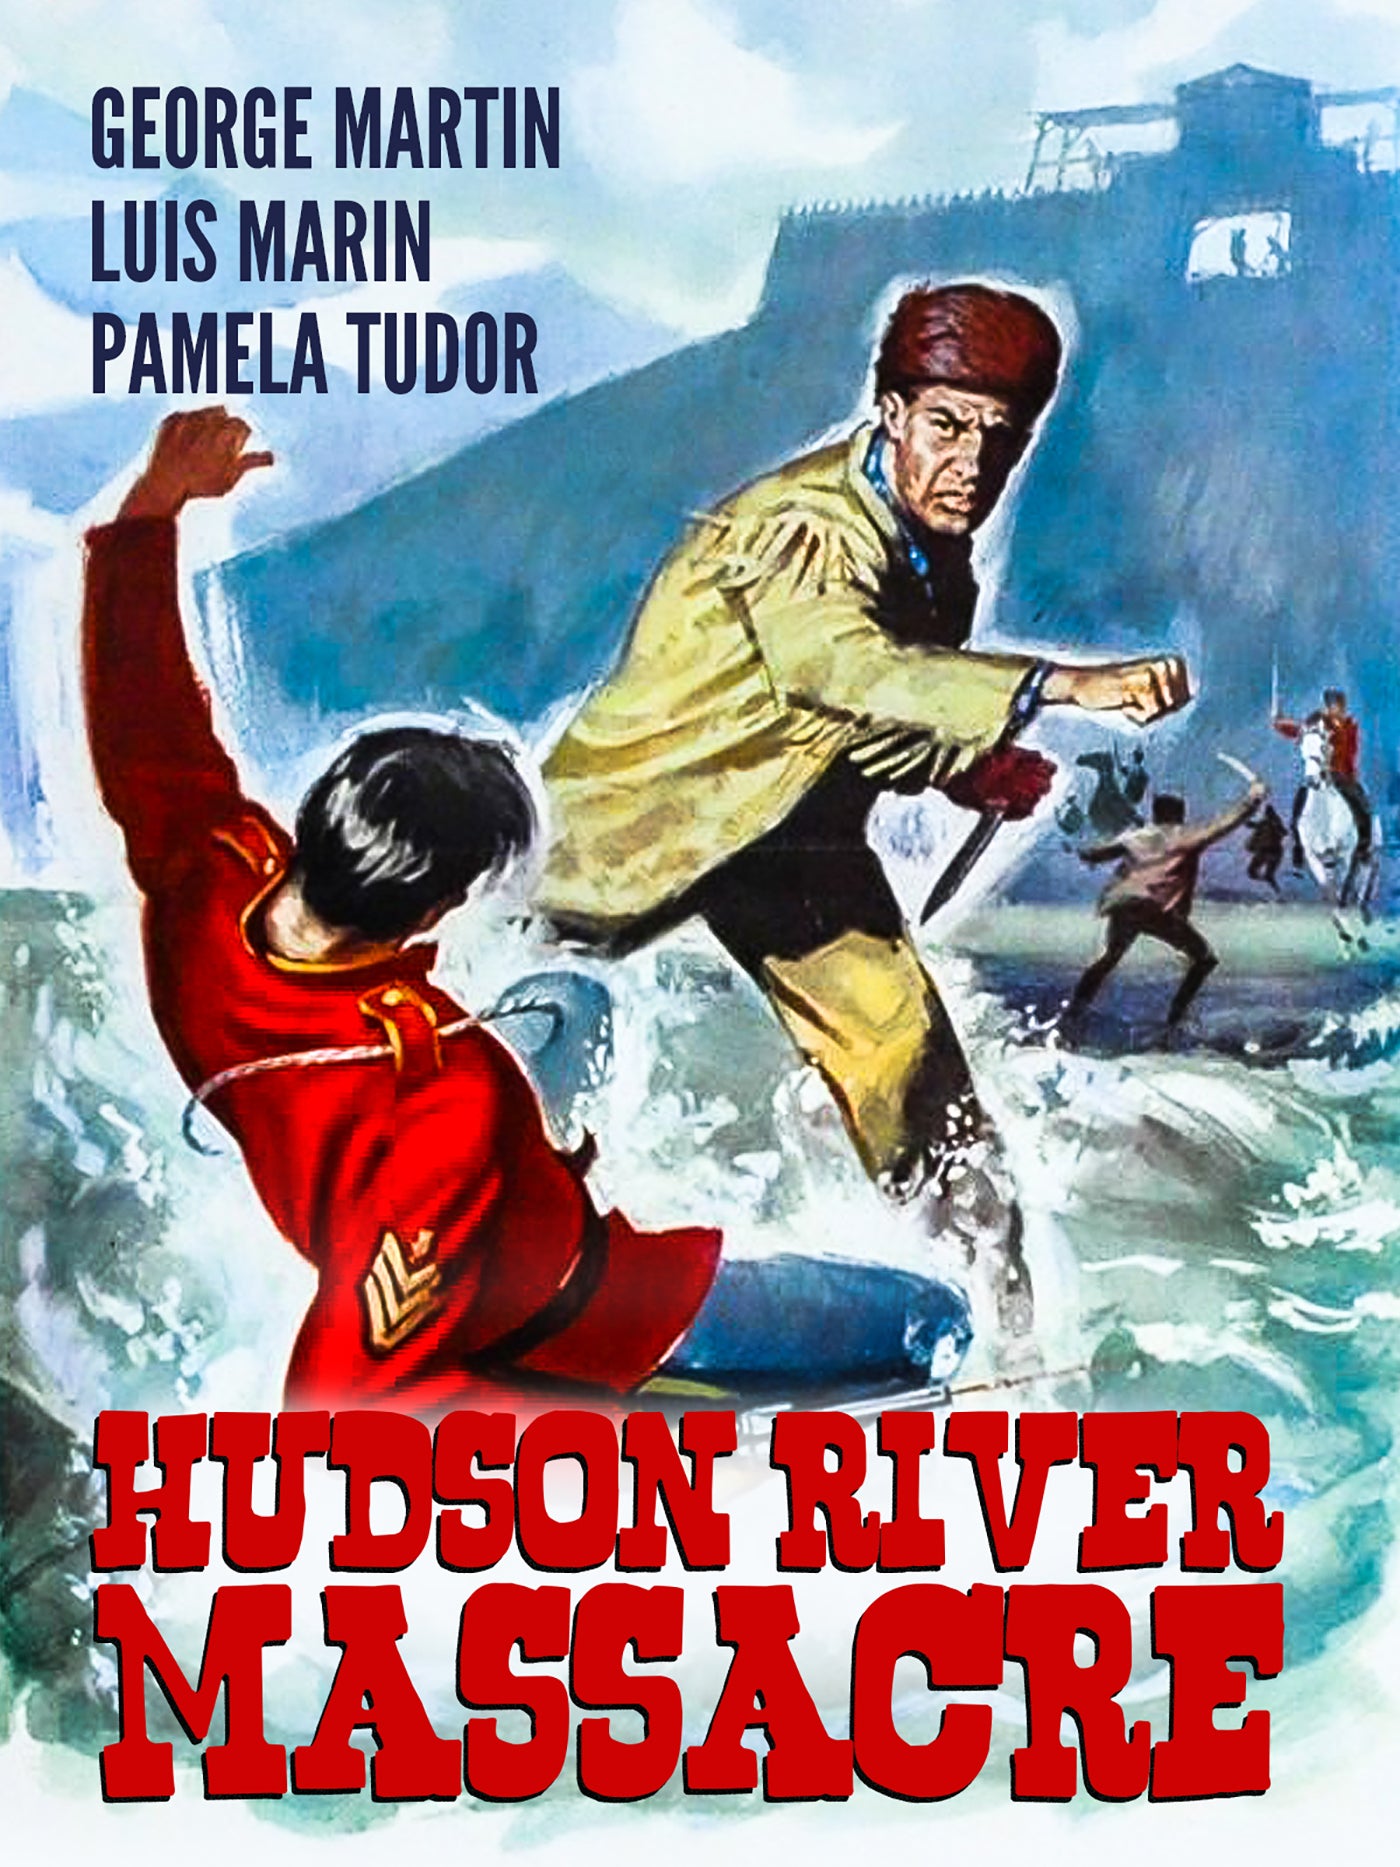 Hudson River Massacre cover art